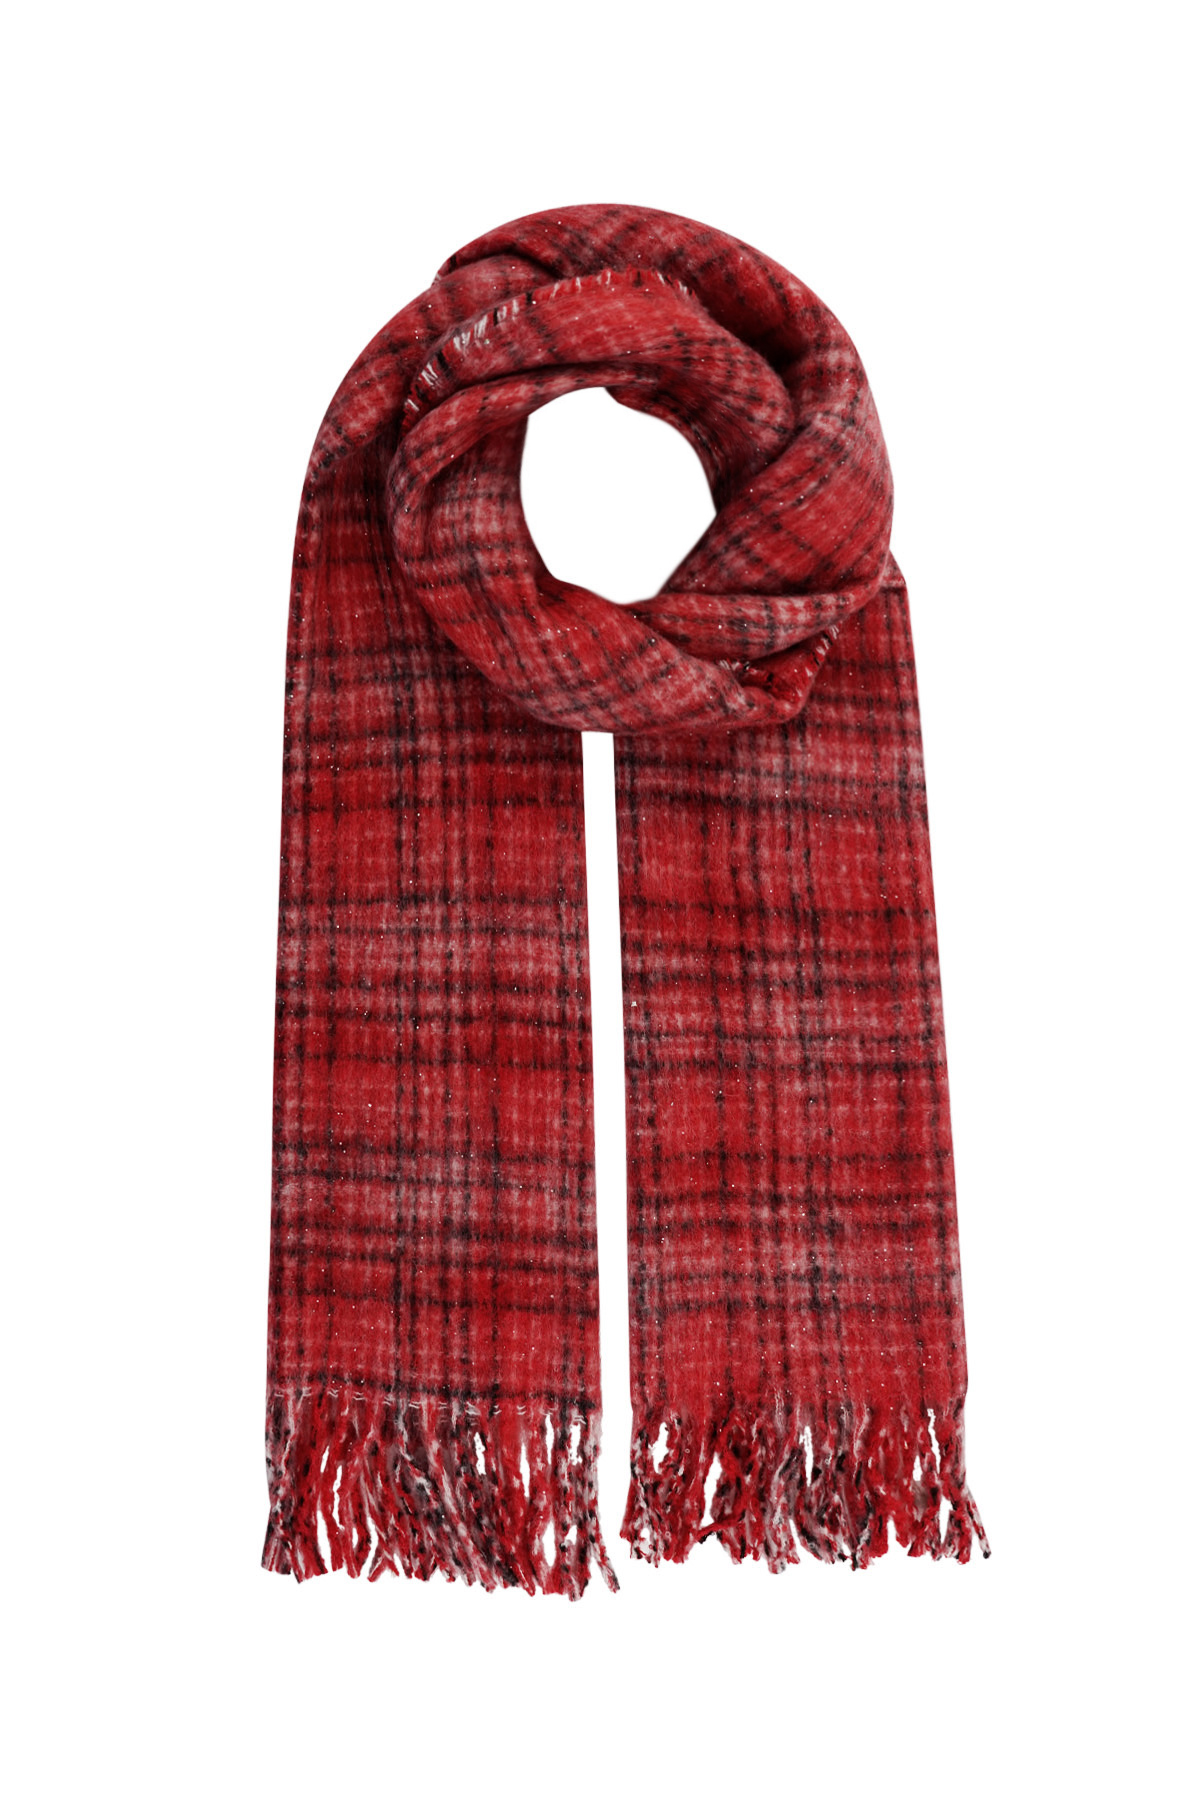 Bufanda de invierno cálida a cuadros - rojo h5 